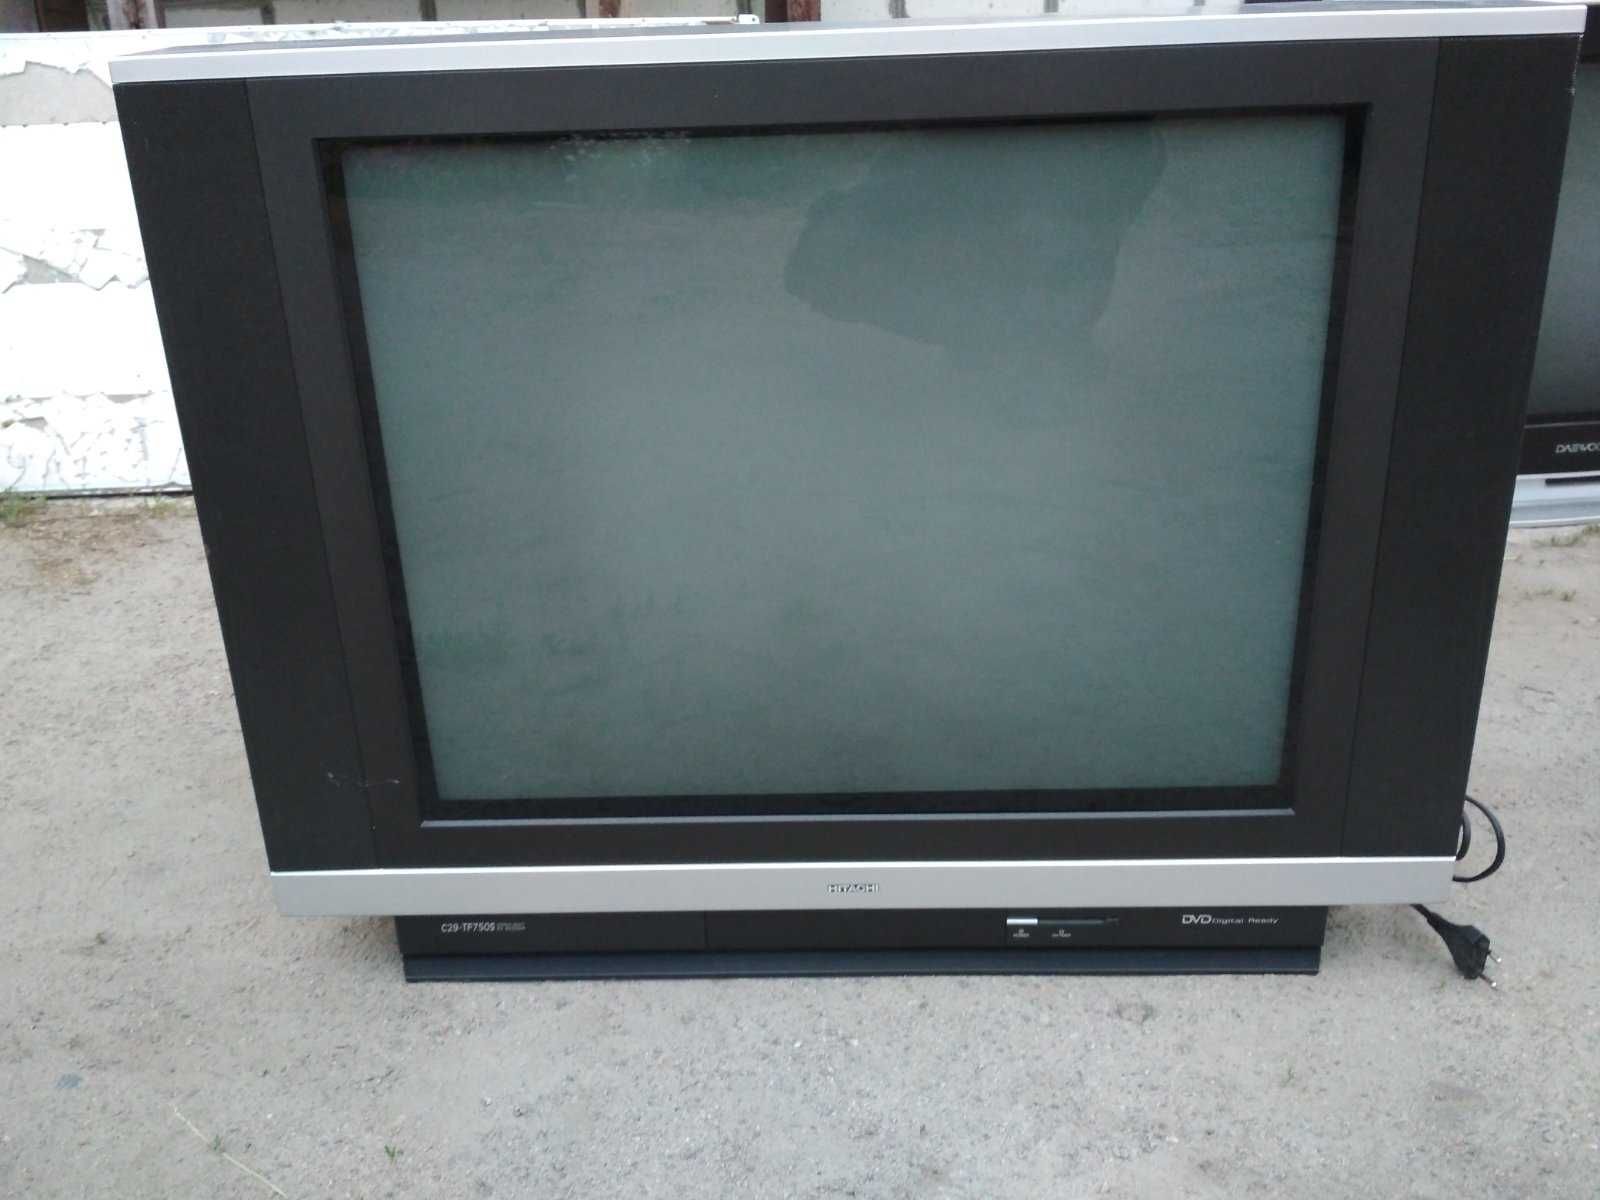 Телевизор Hitachi C29-TF750S кинескопный